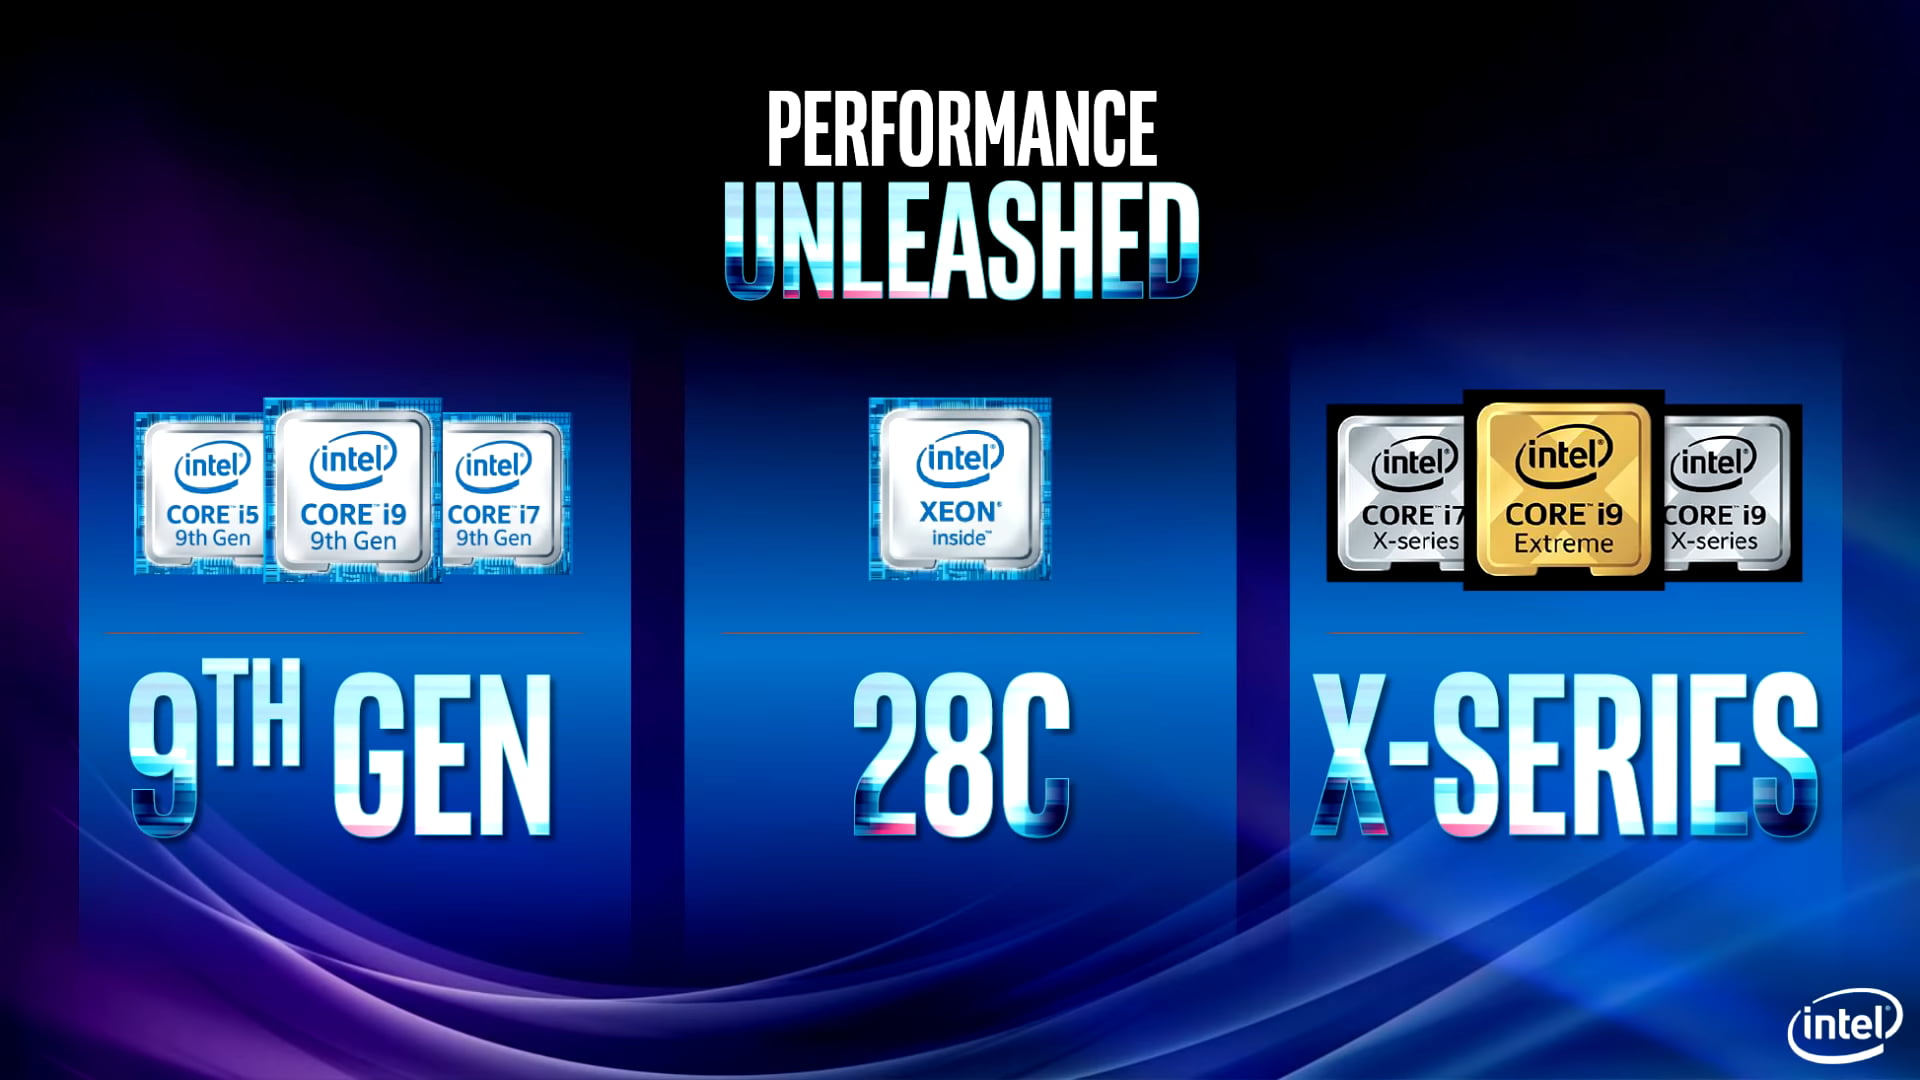 Intel Core i9 9900K - New 9th Gen Octa-core processors